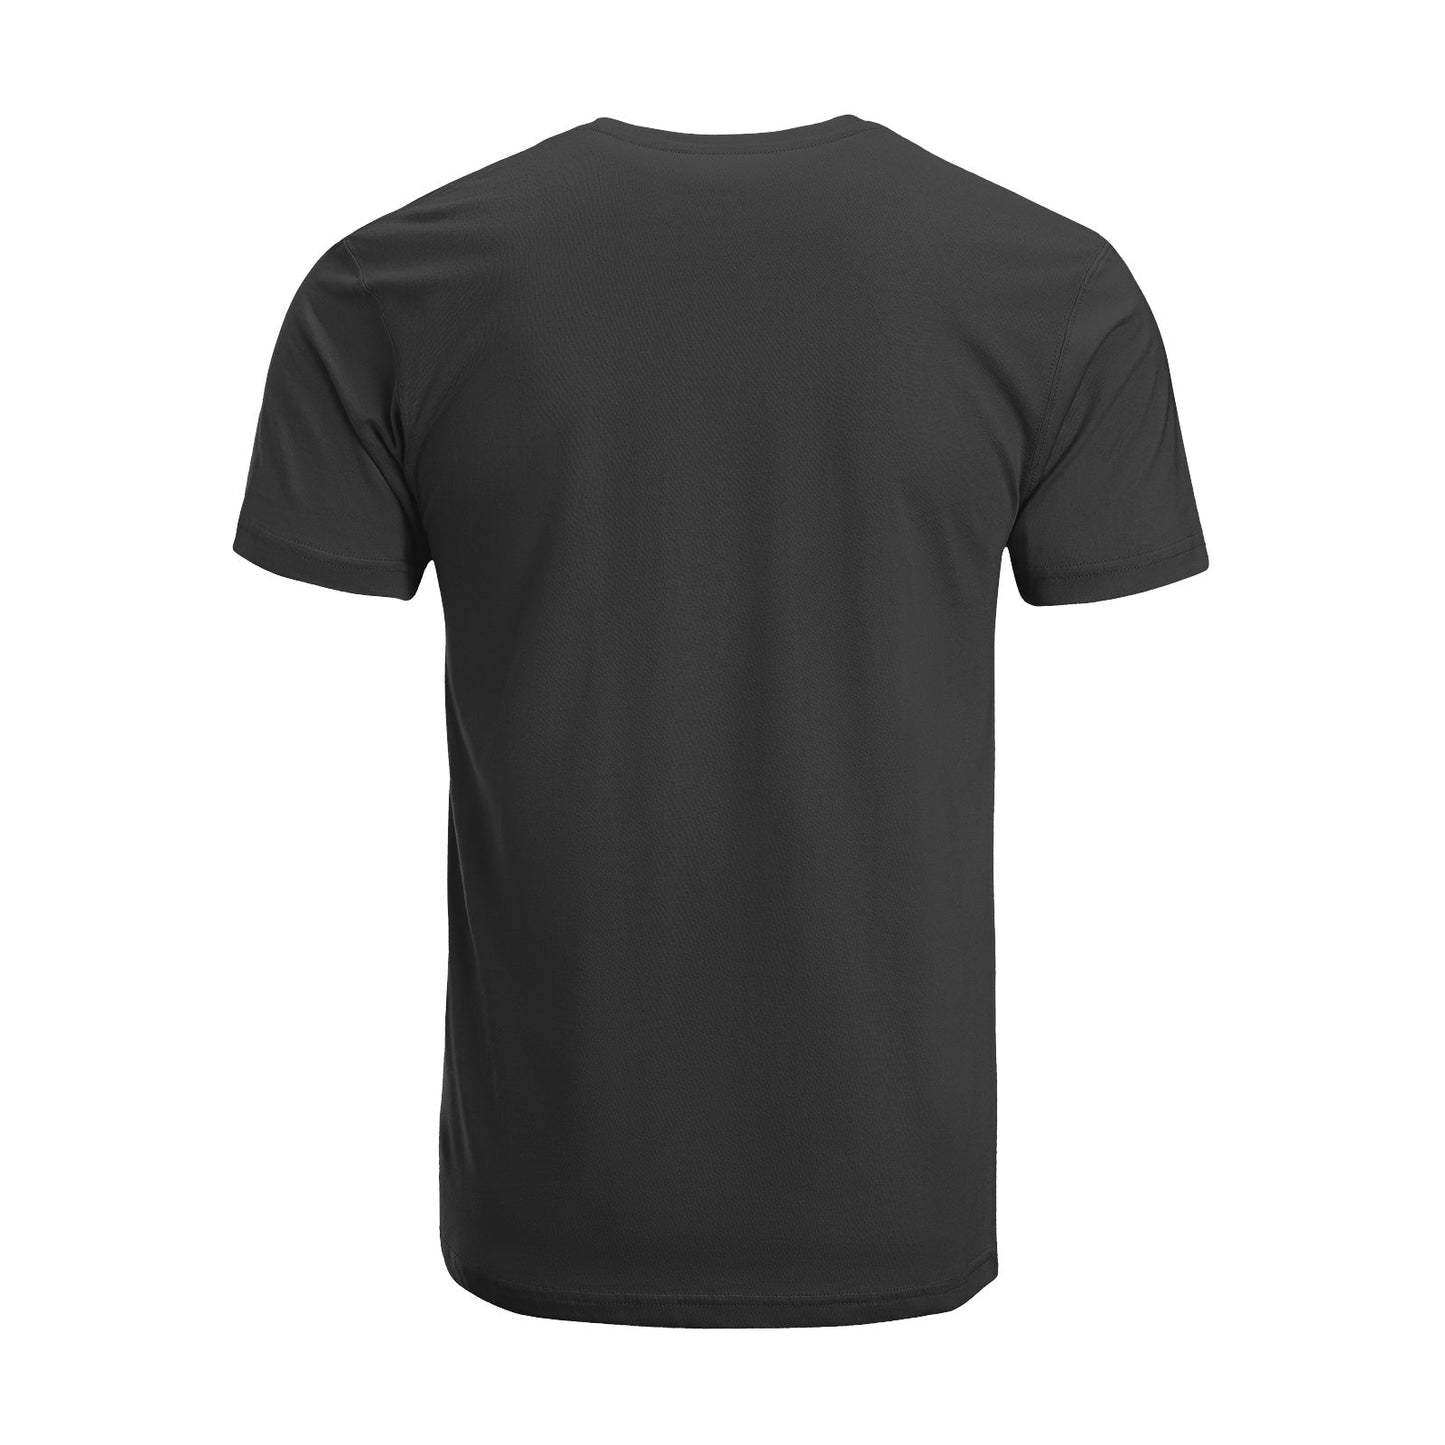 Unisex Short Sleeve Crew Neck Cotton Jersey T-Shirt TRUCK 29